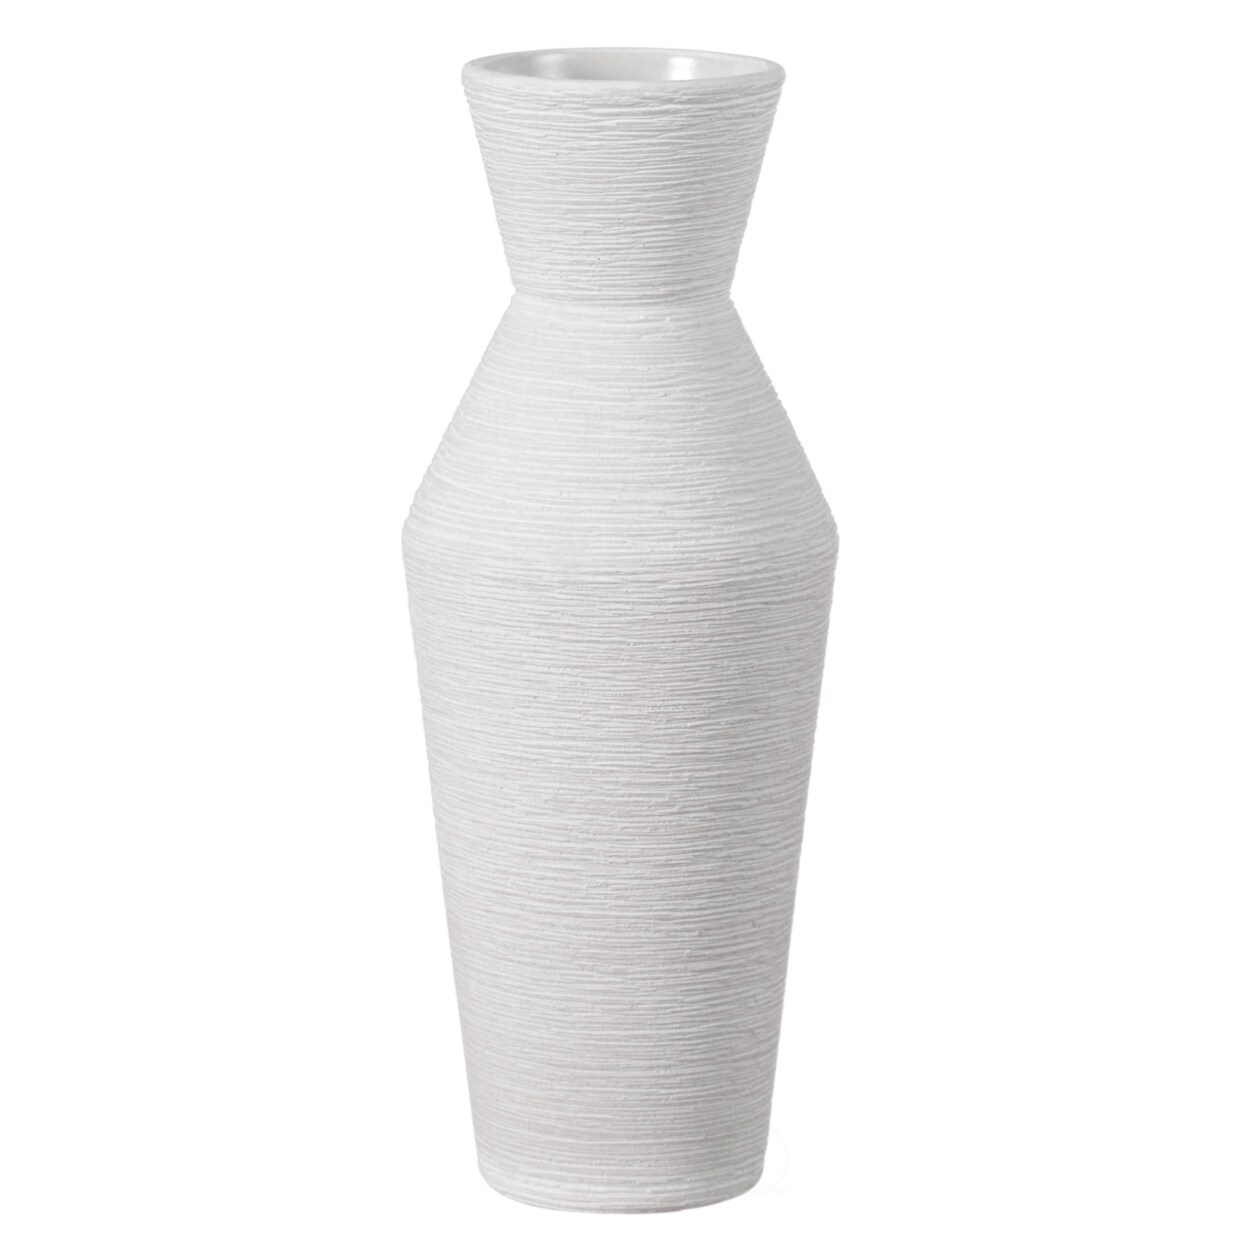 Uniquewise Decorative Ceramic Round Sharp Concaved Top Vase Centerpiece Table Vase